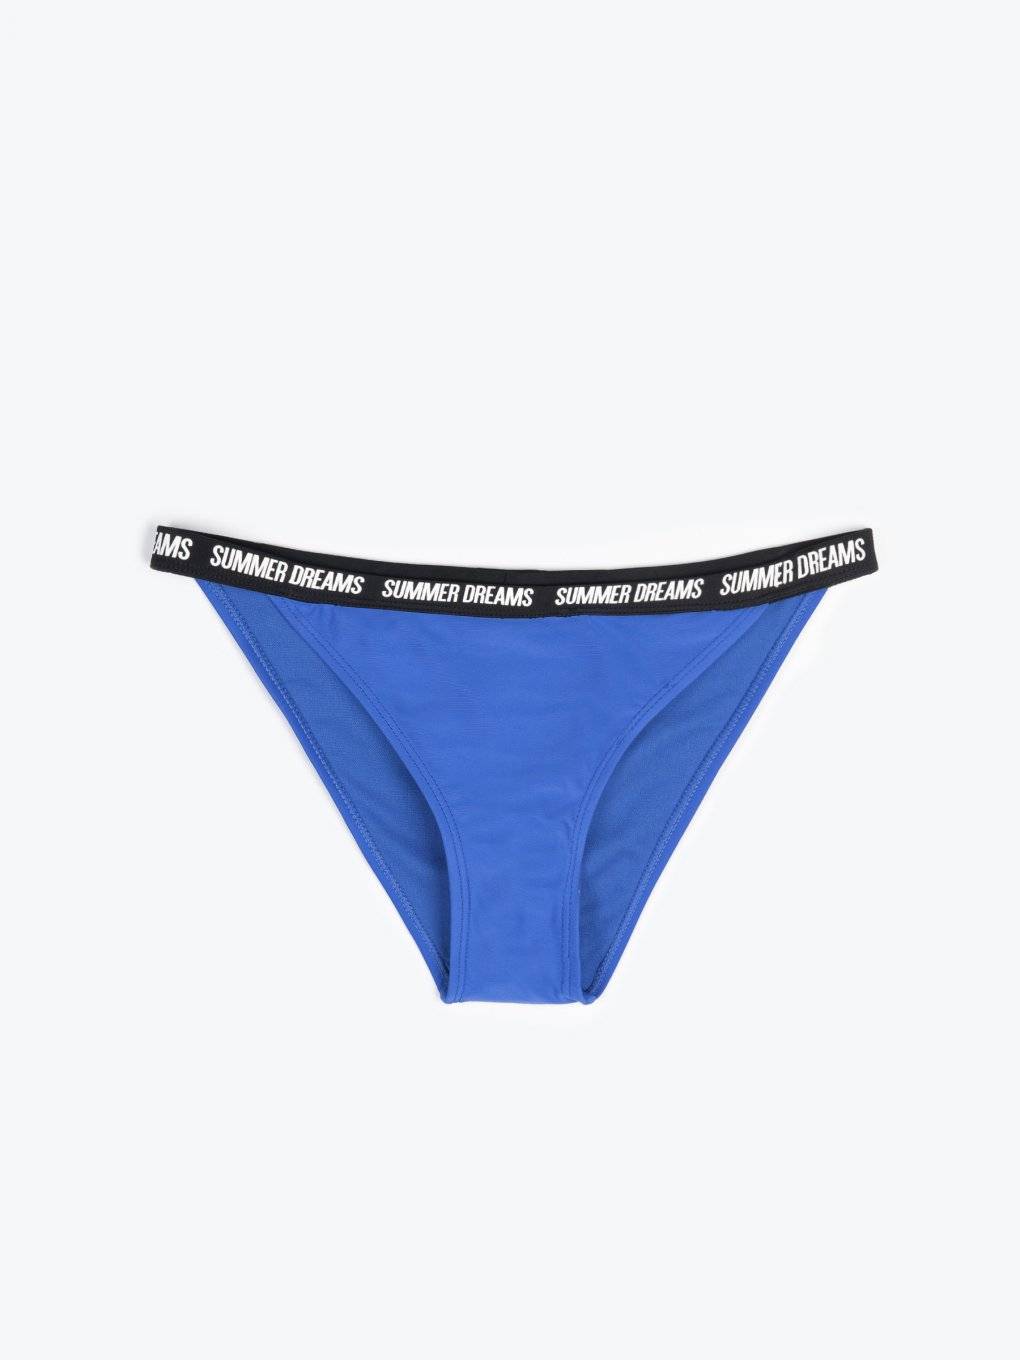 Bikini bottom with slogan print